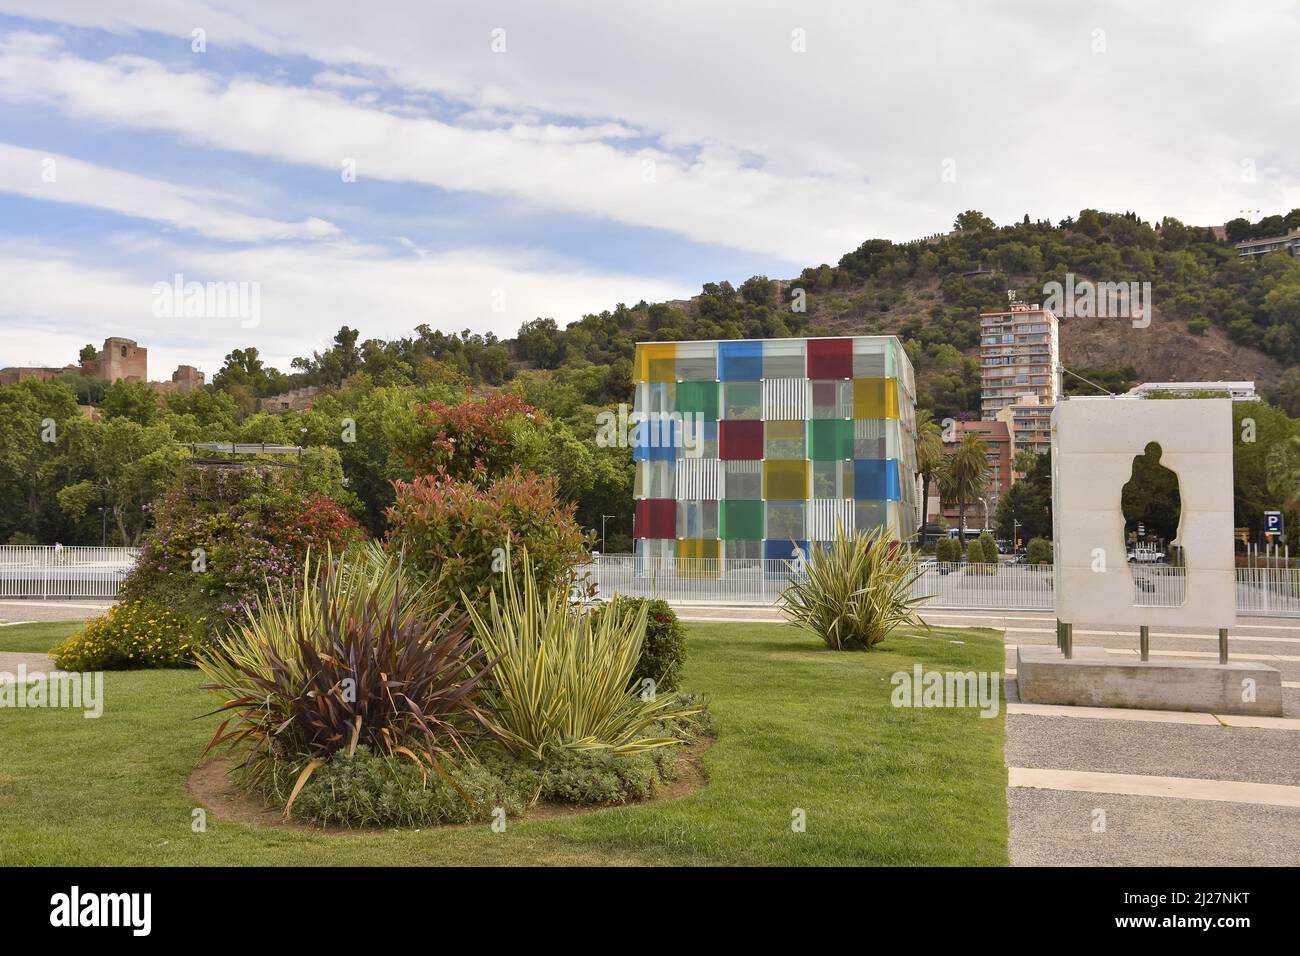 Centre Pompidou Malaga (Musée d'Art moderne), structure en cube de verre coloré et jardin à Malaga Andalousie Espagne. Banque D'Images